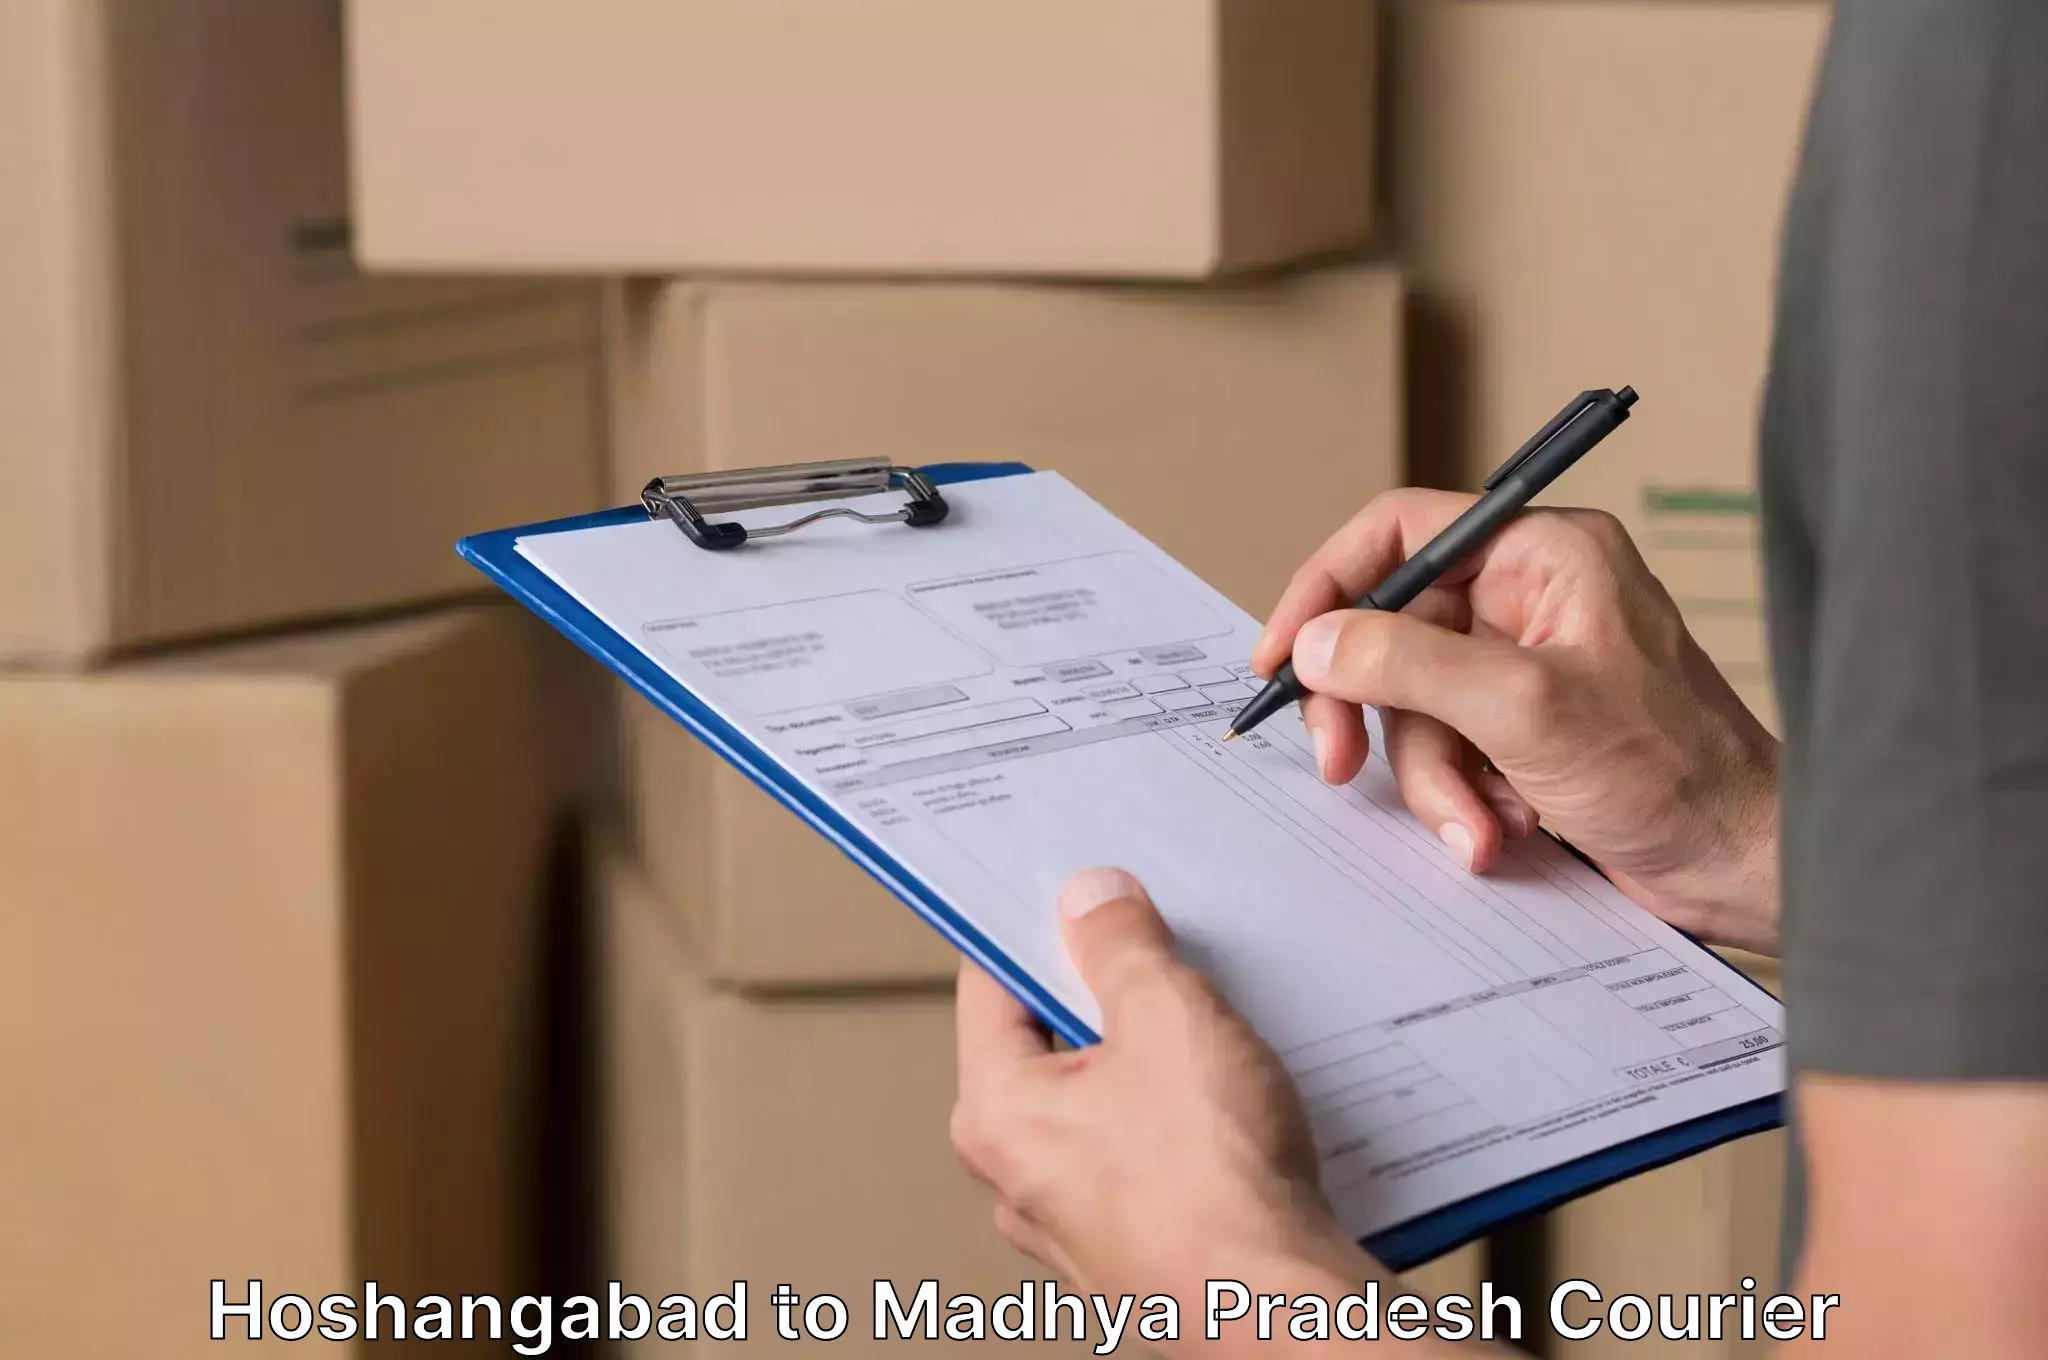 Furniture relocation experts Hoshangabad to Madhya Pradesh